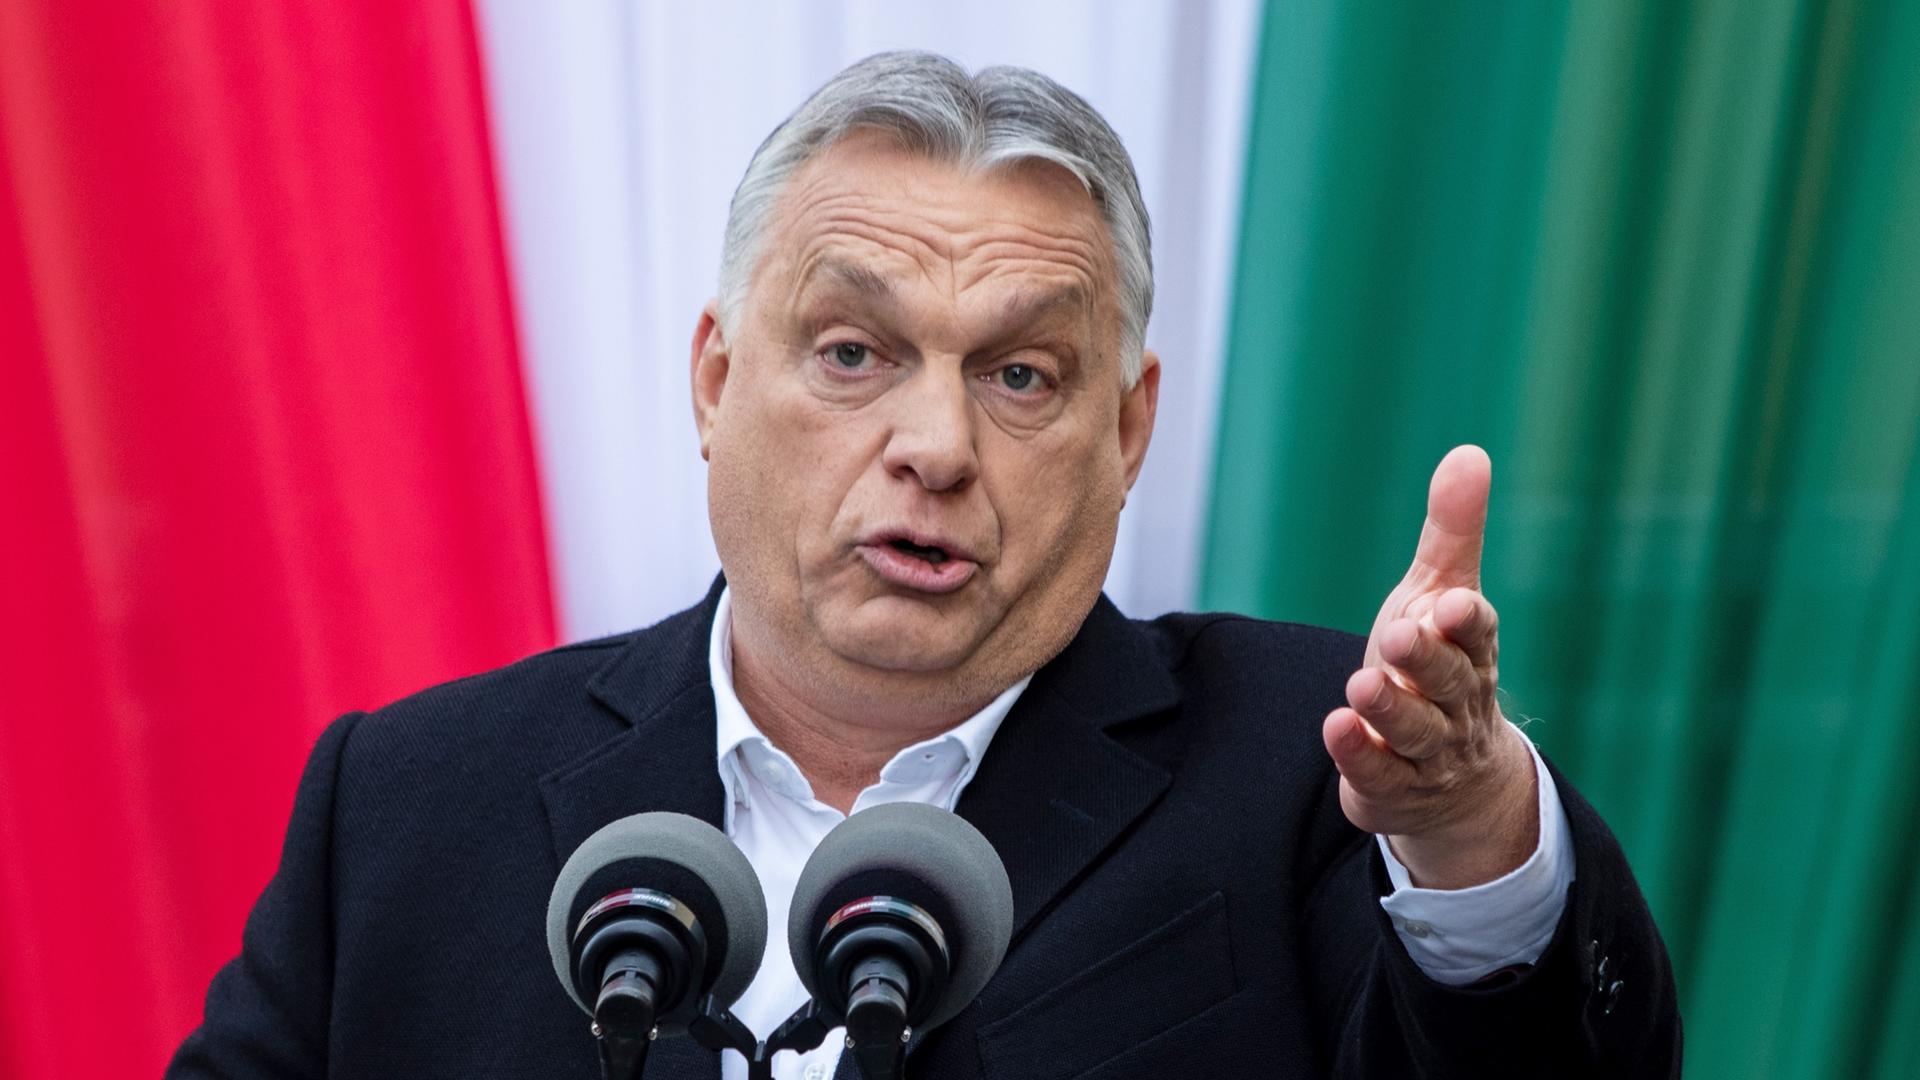 Ungarns Ministerpräsident Viktor Orbán gestikuliert bei einem Wahlkampfauftritt vor einer rot-weiß-grünen Fahne